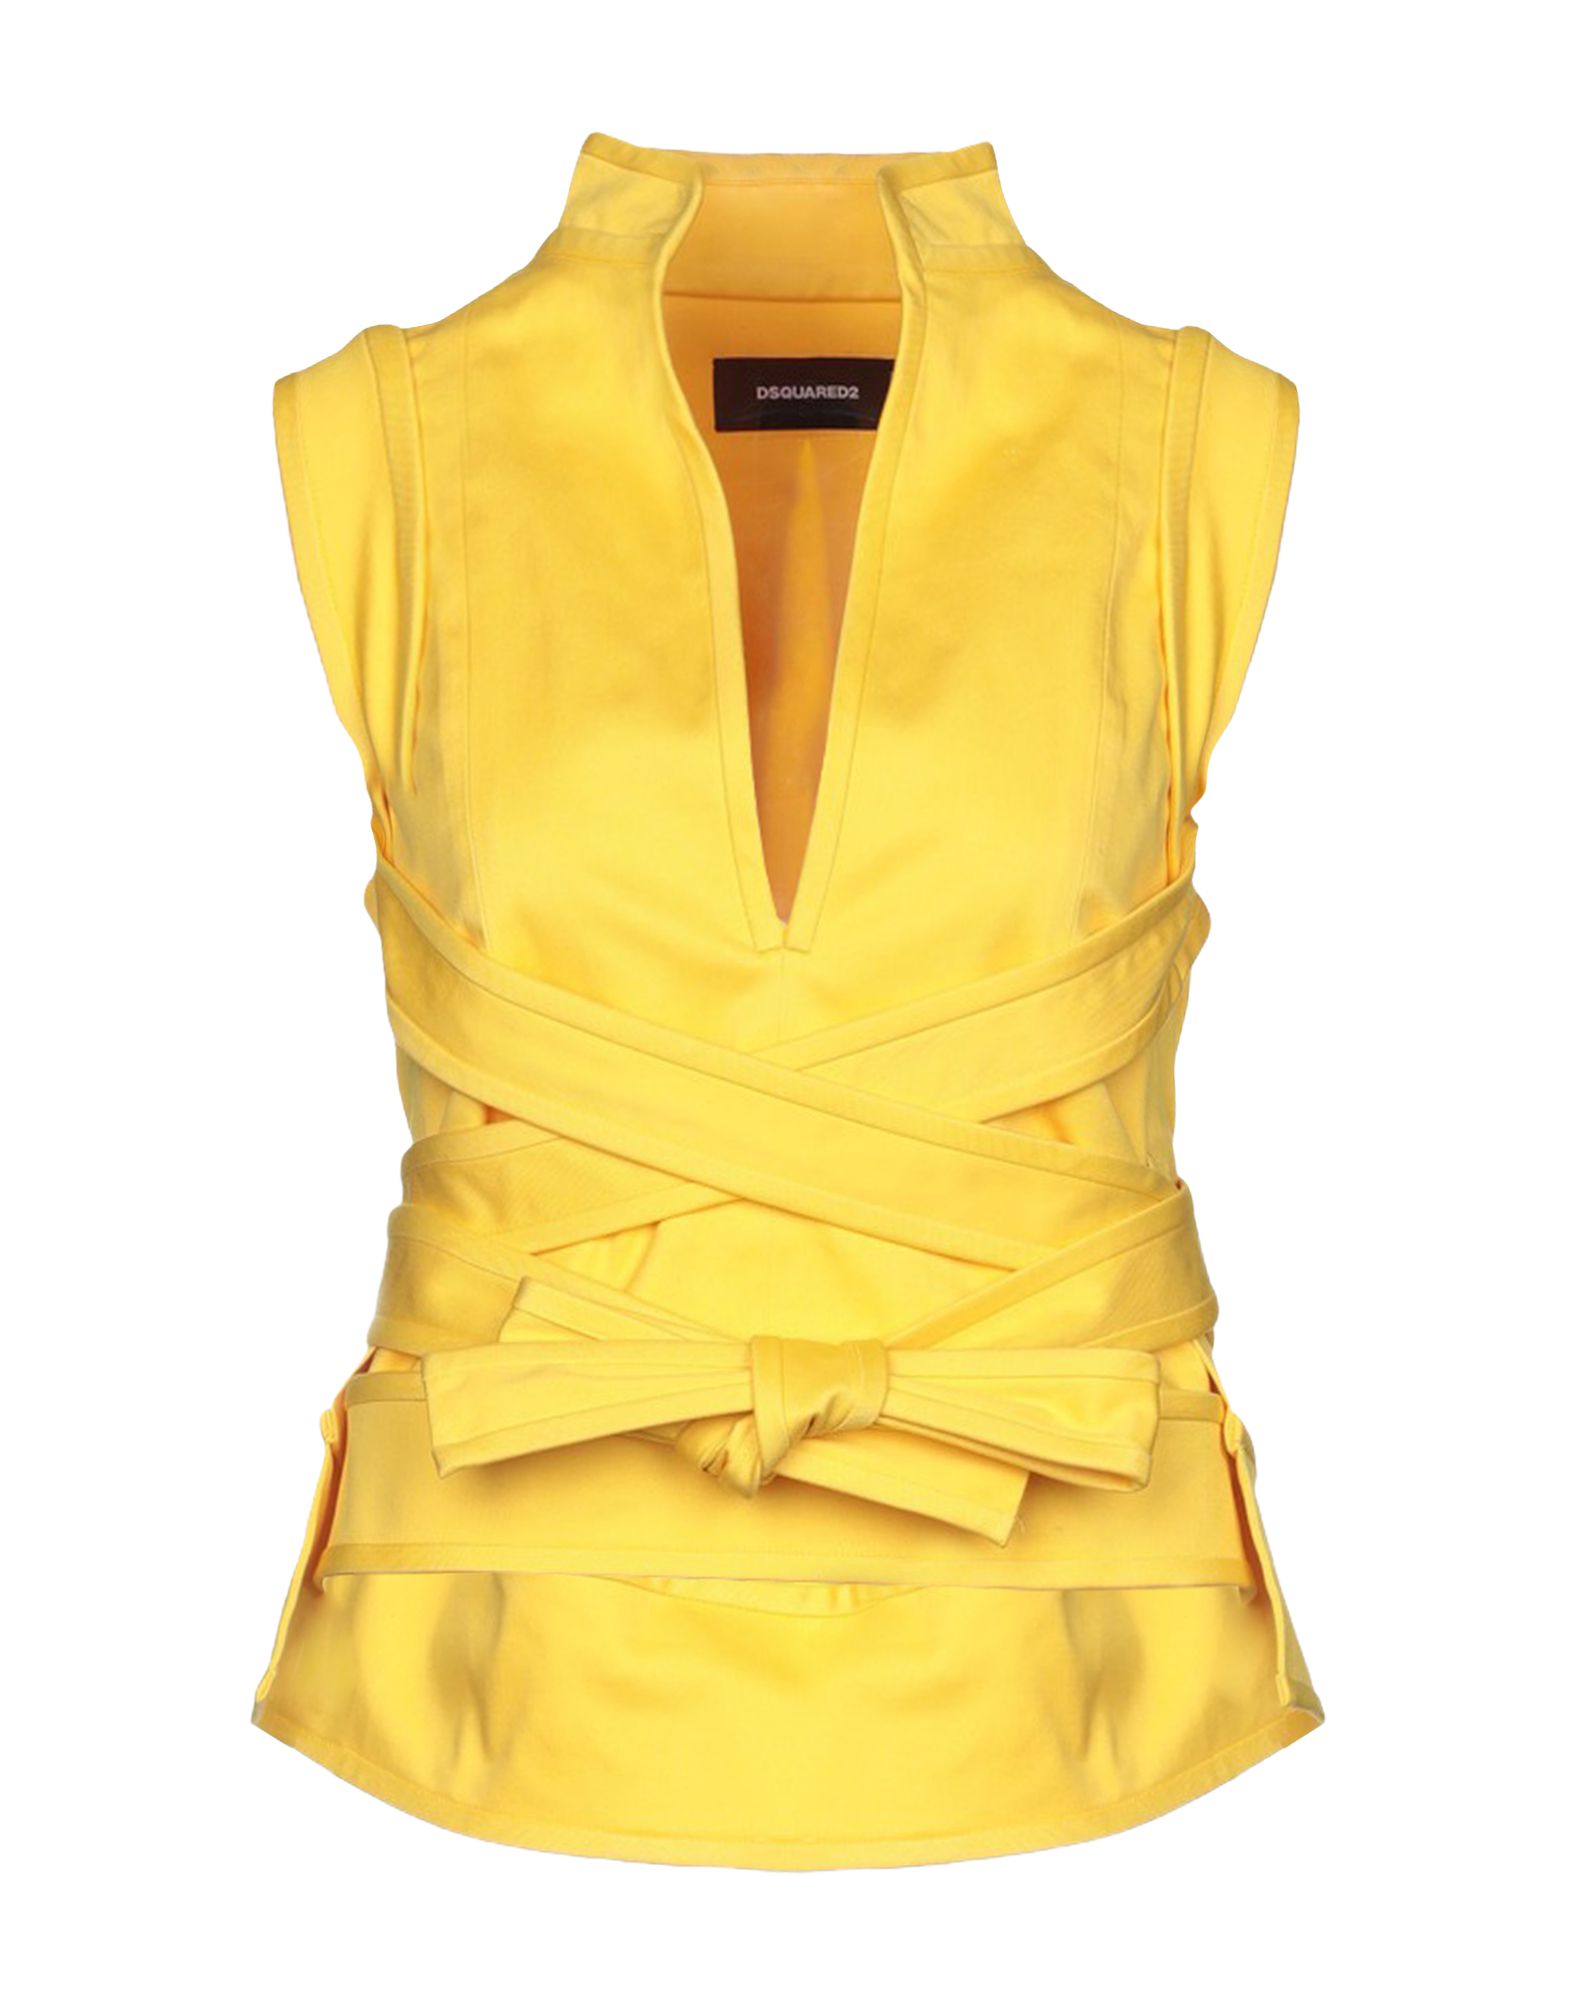 Топ желтый: Самый модный топ лета | Журнал Harper’s Bazaar